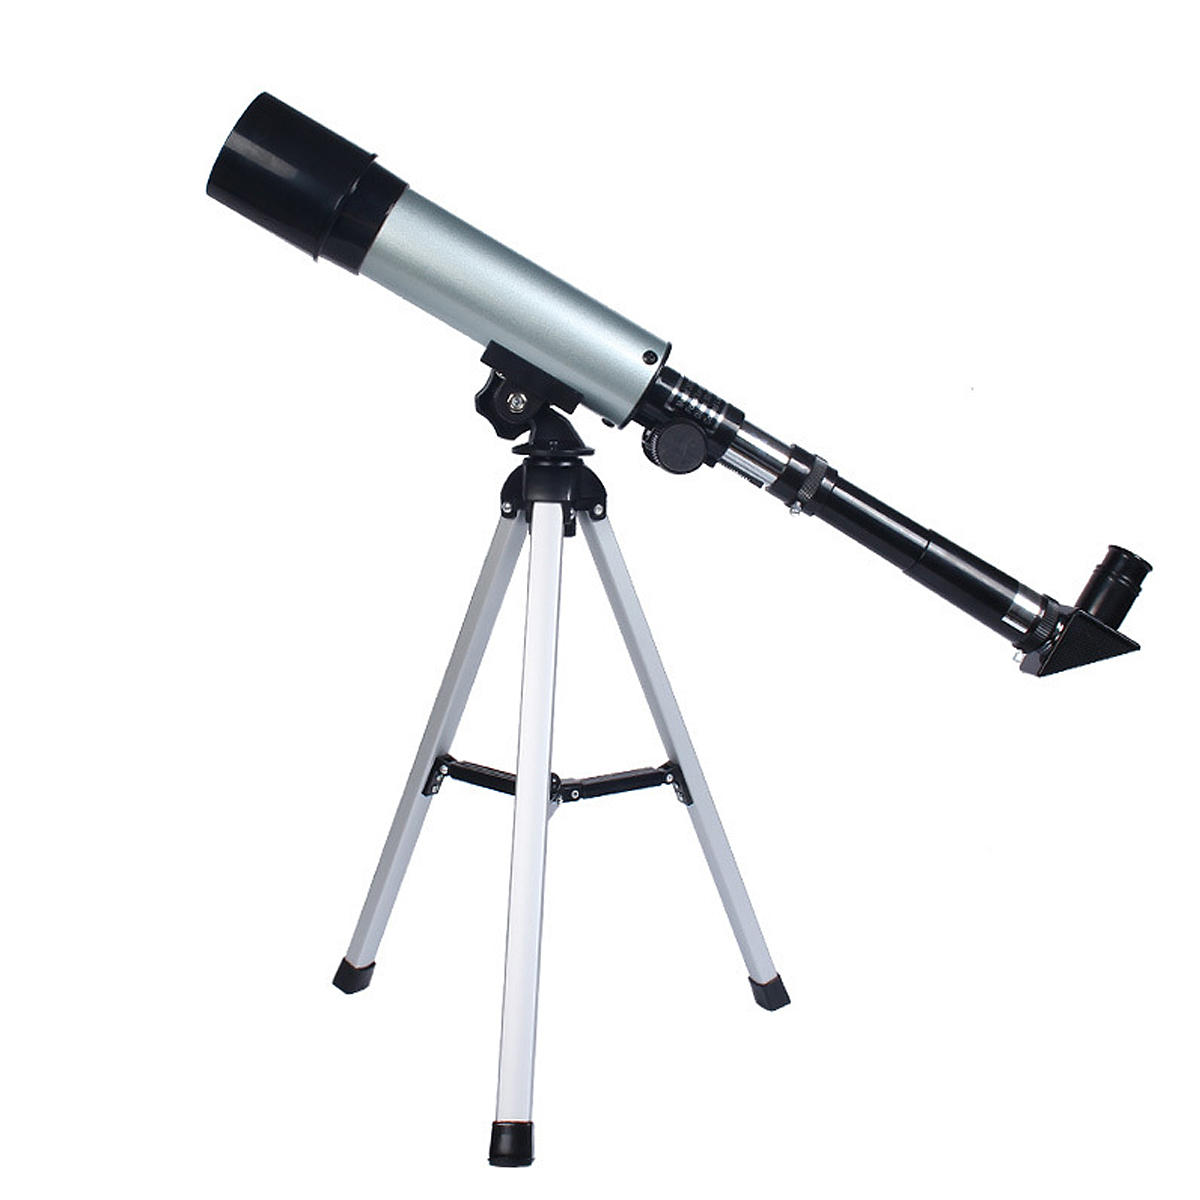 Telescopio astronomico rifrattore F36050 90X con specchio celeste a 90°. Immagine chiara.